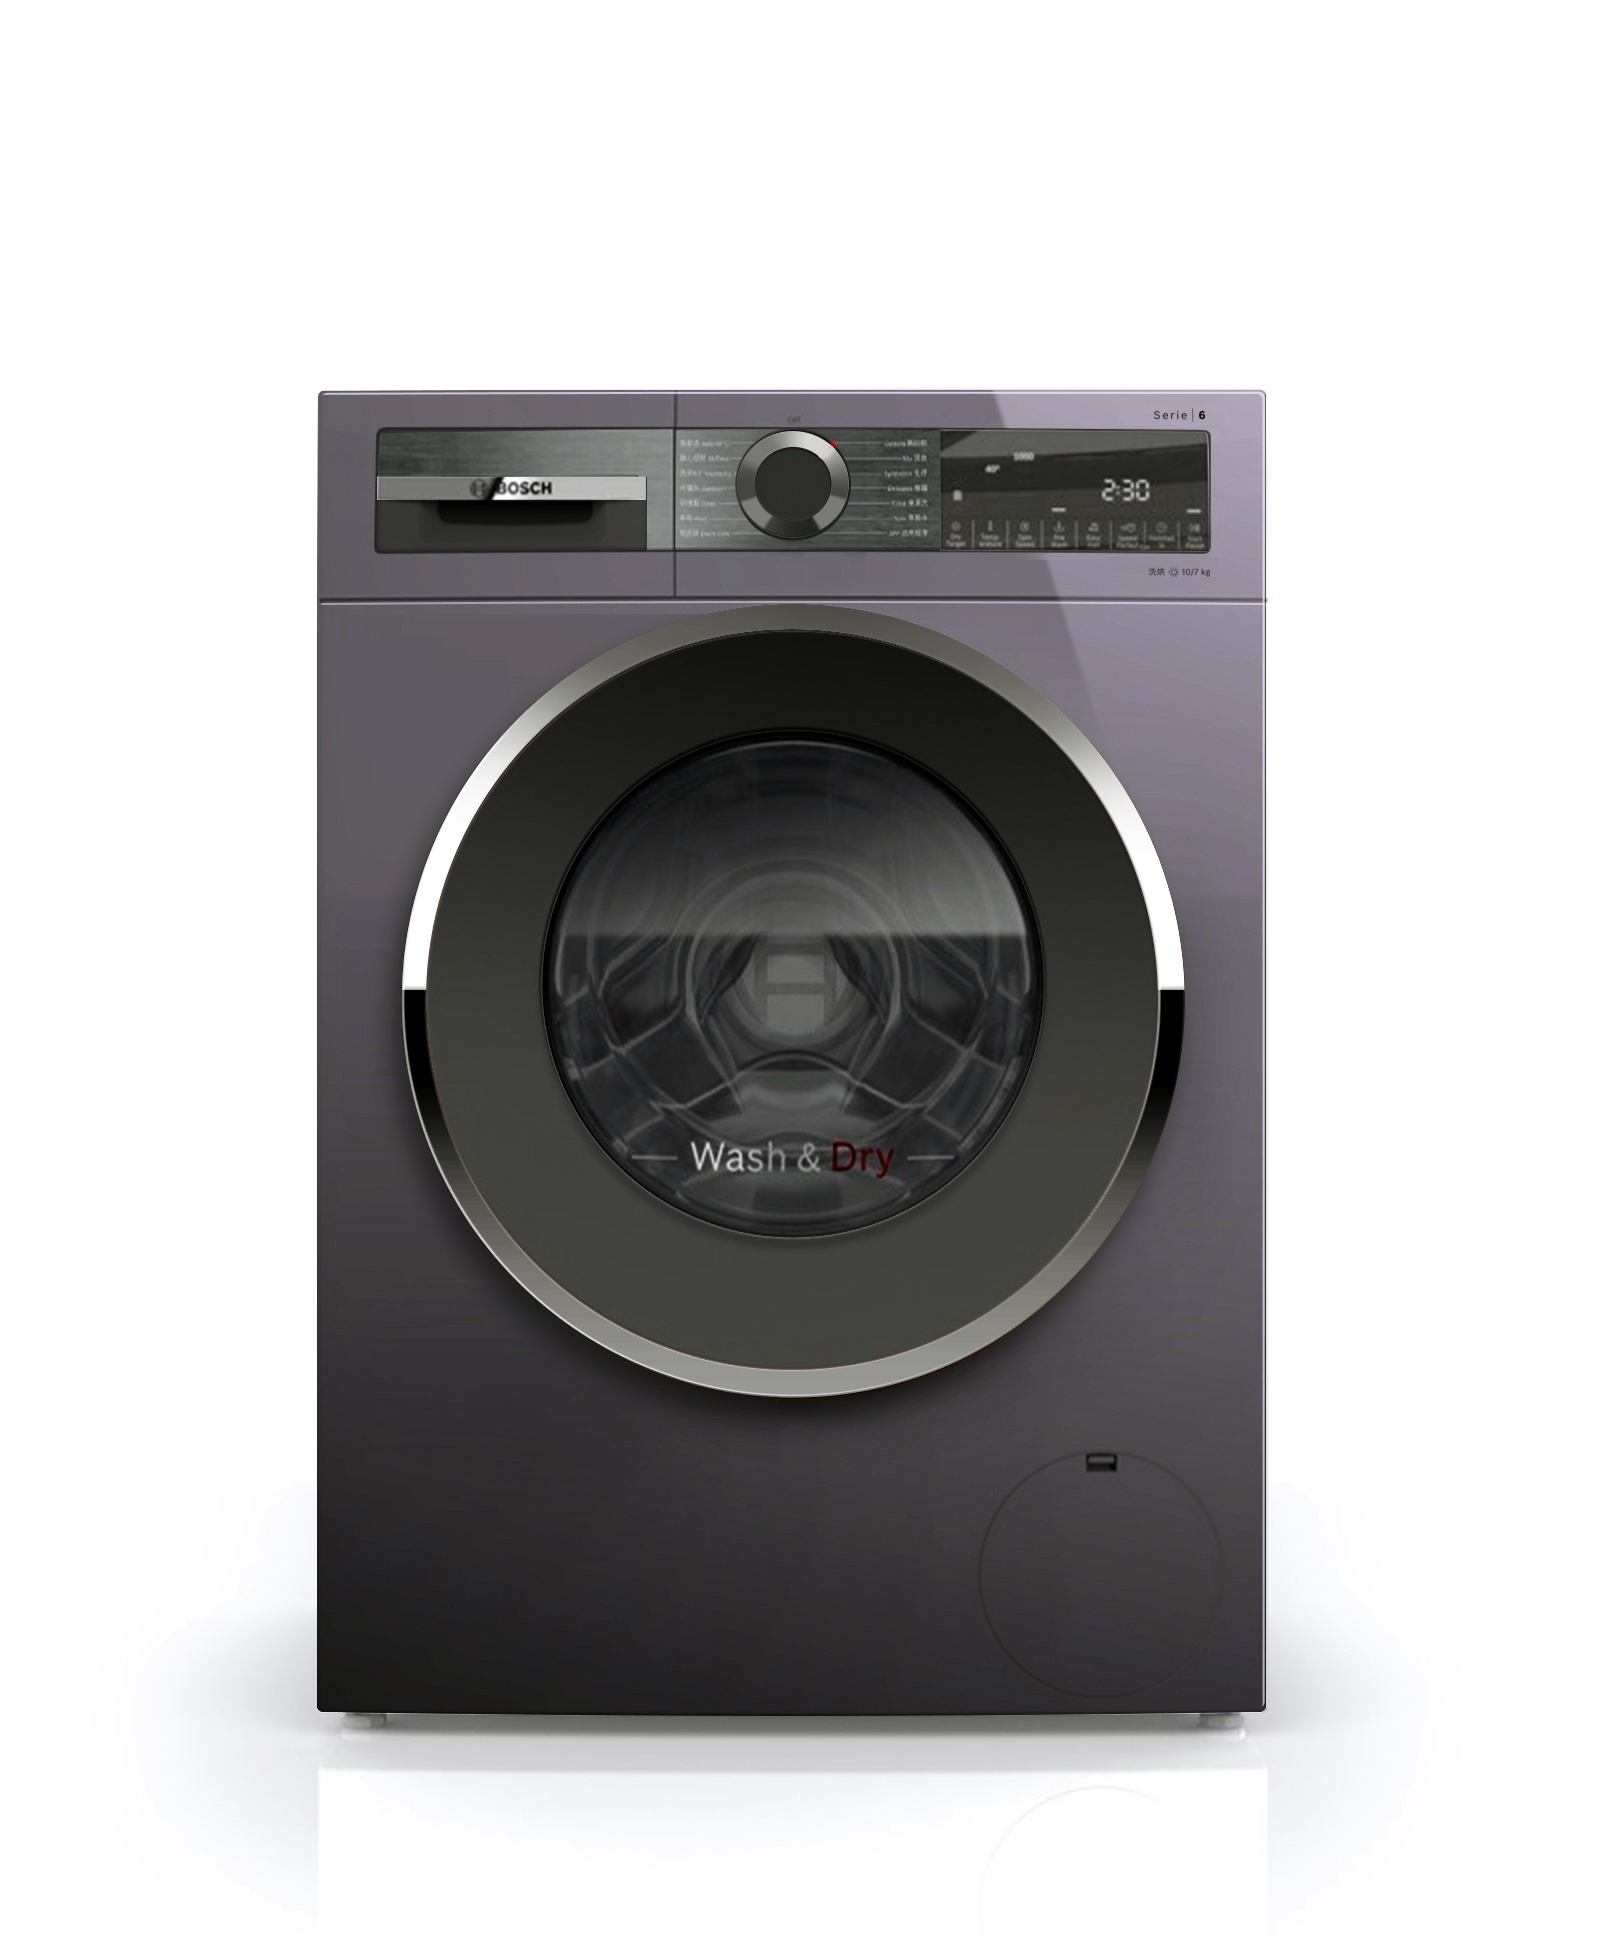 BOSCH New Value Washing Machine Serie 6